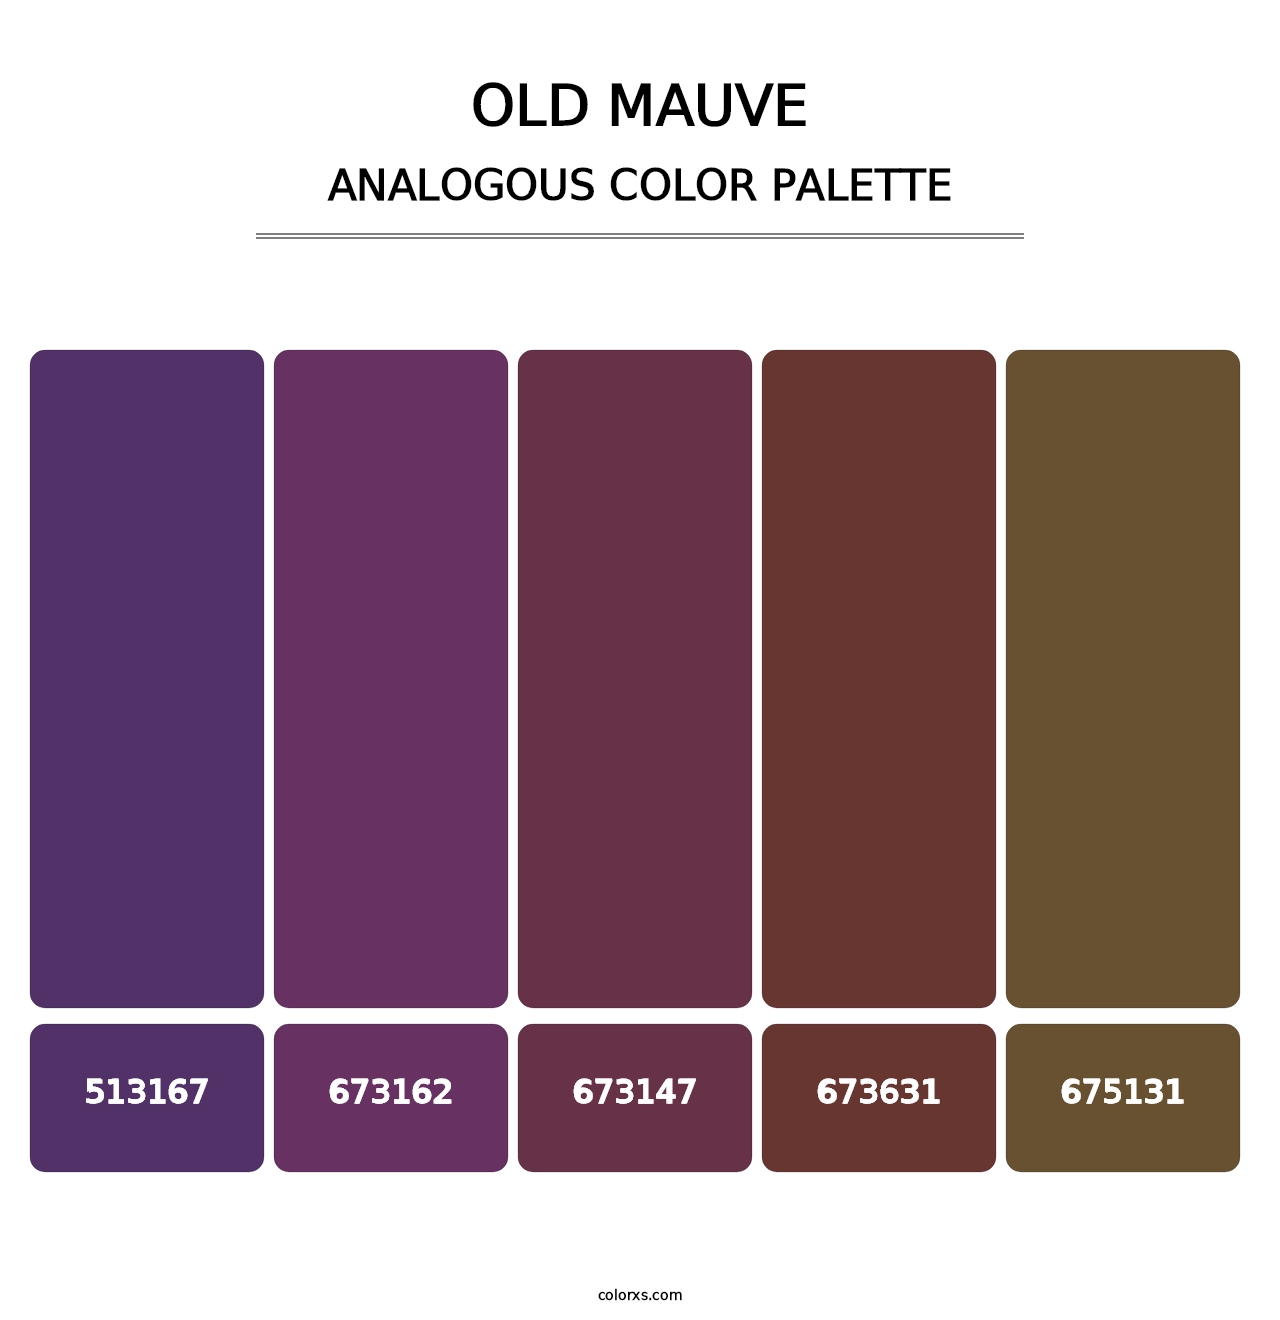 Old Mauve - Analogous Color Palette